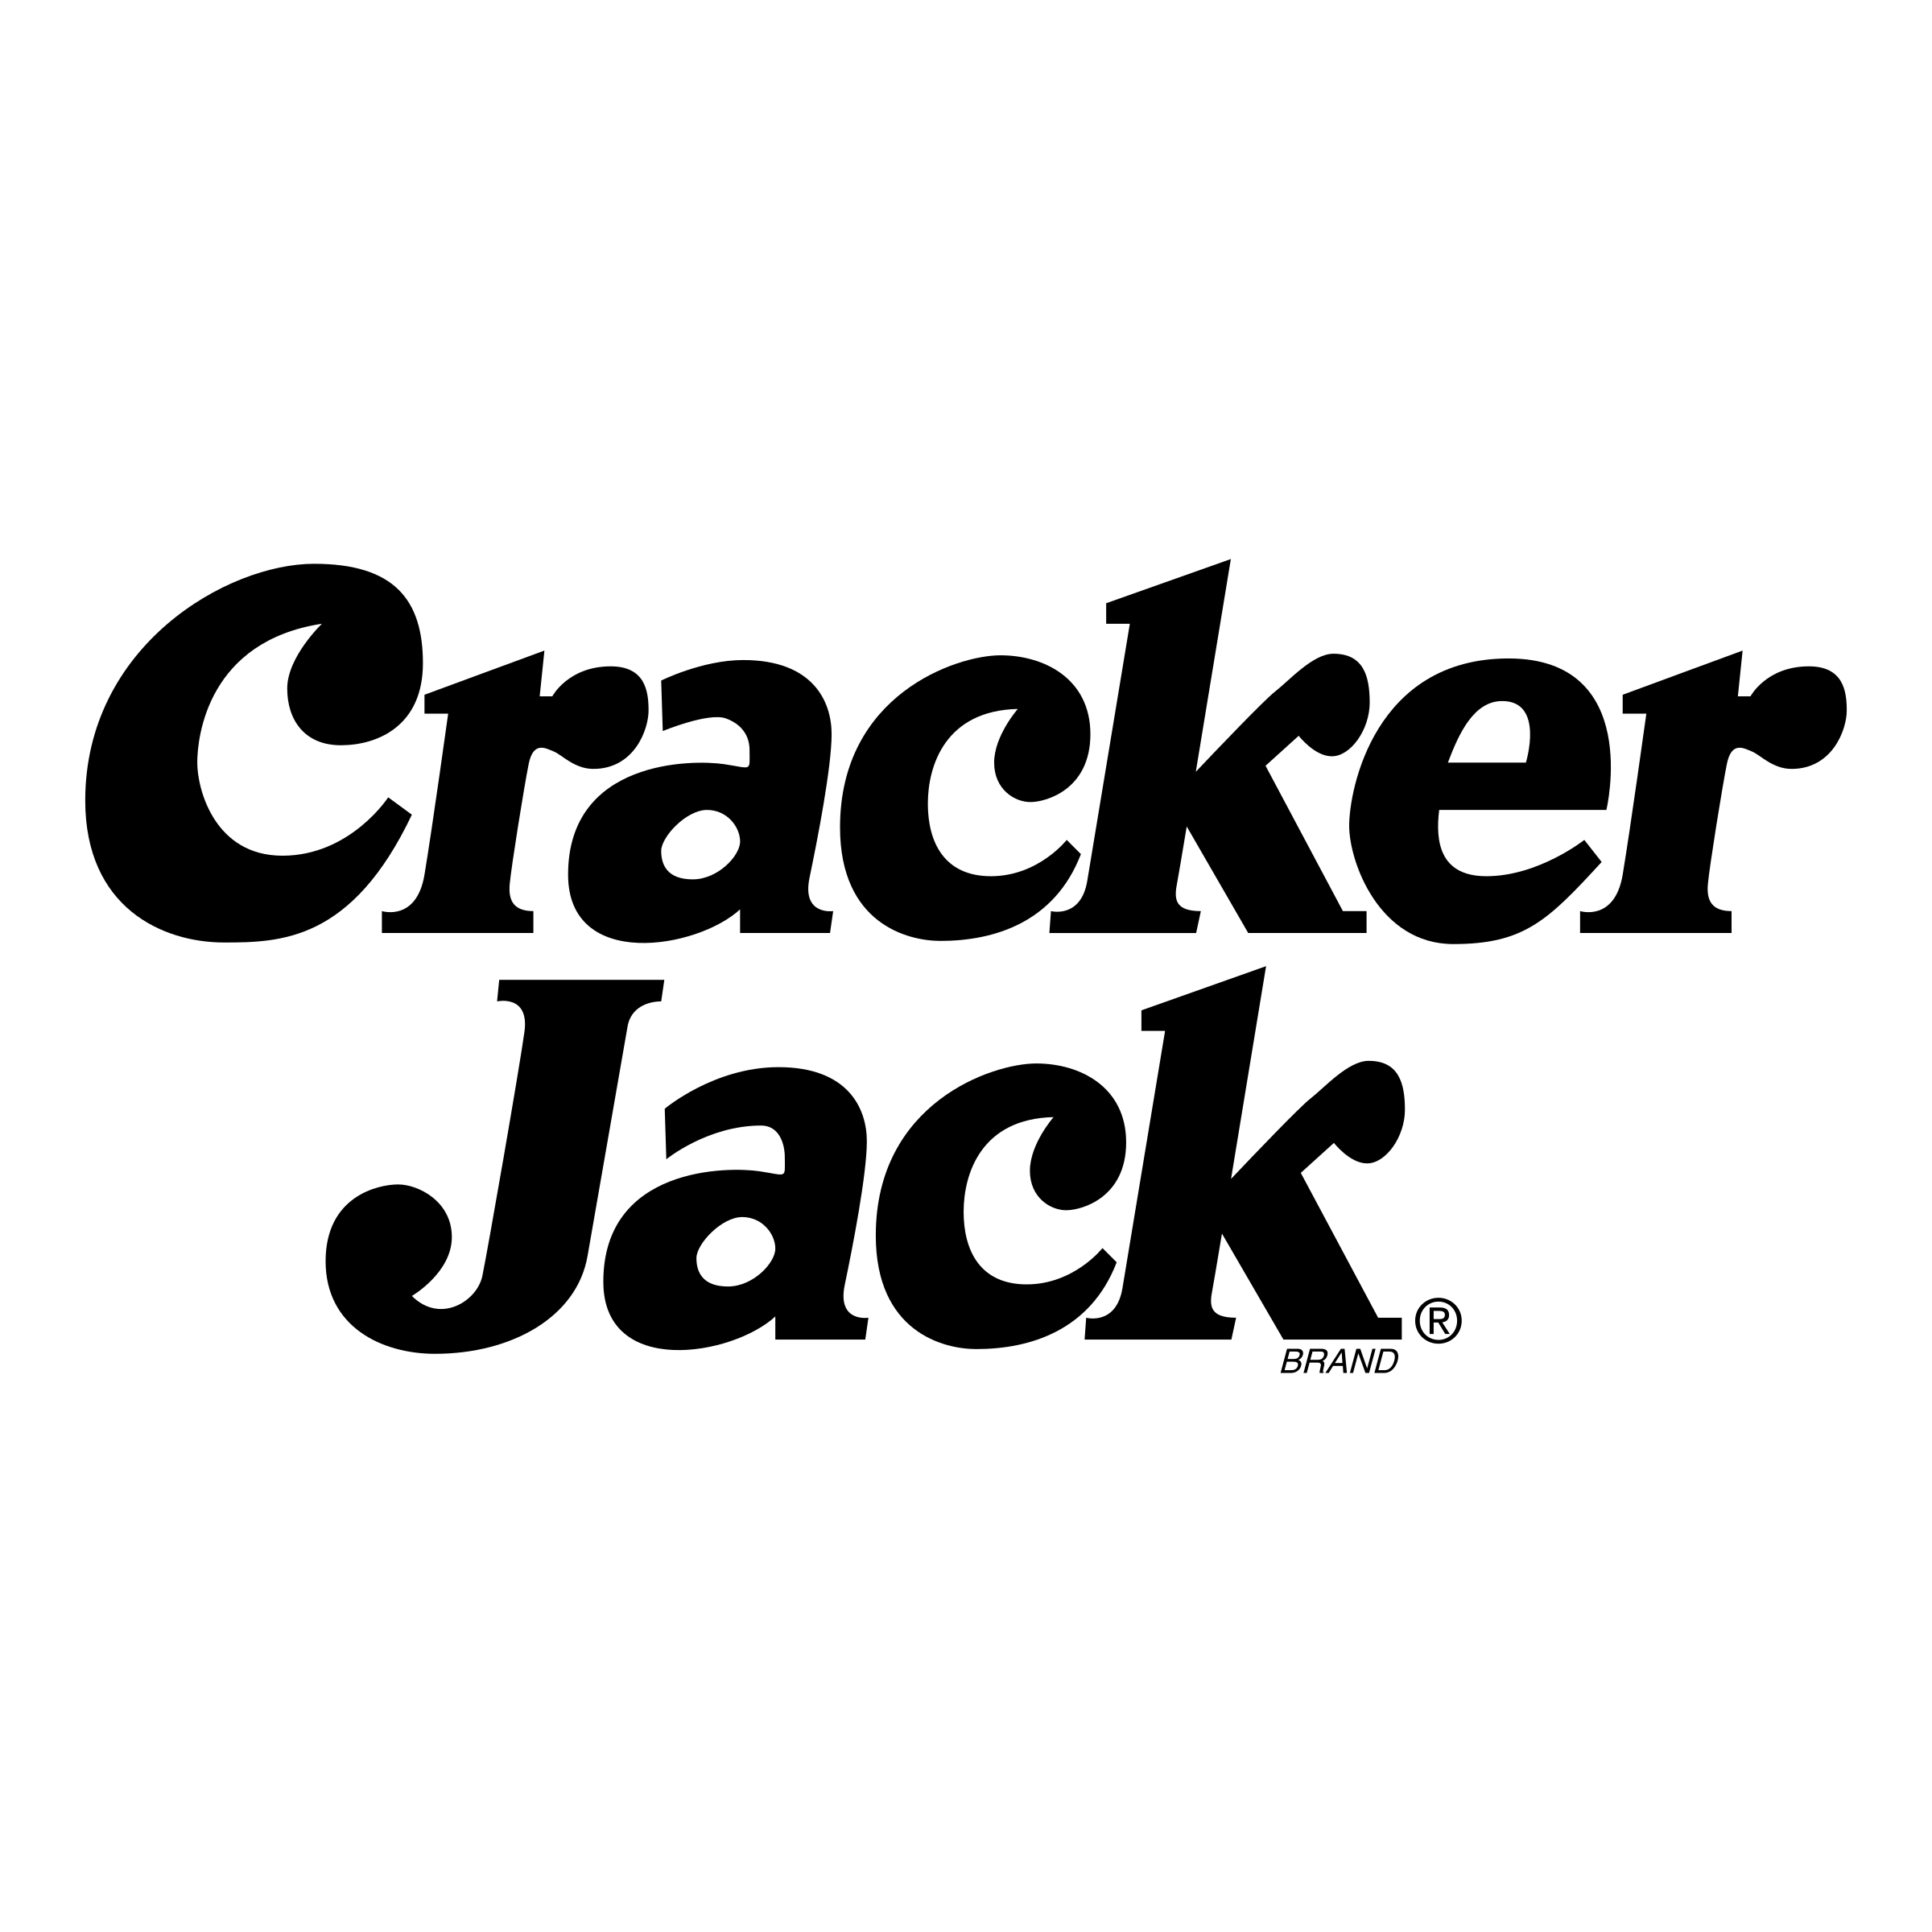 Cracker Logo - Cracker Jack Logo PNG Transparent & SVG Vector - Freebie Supply